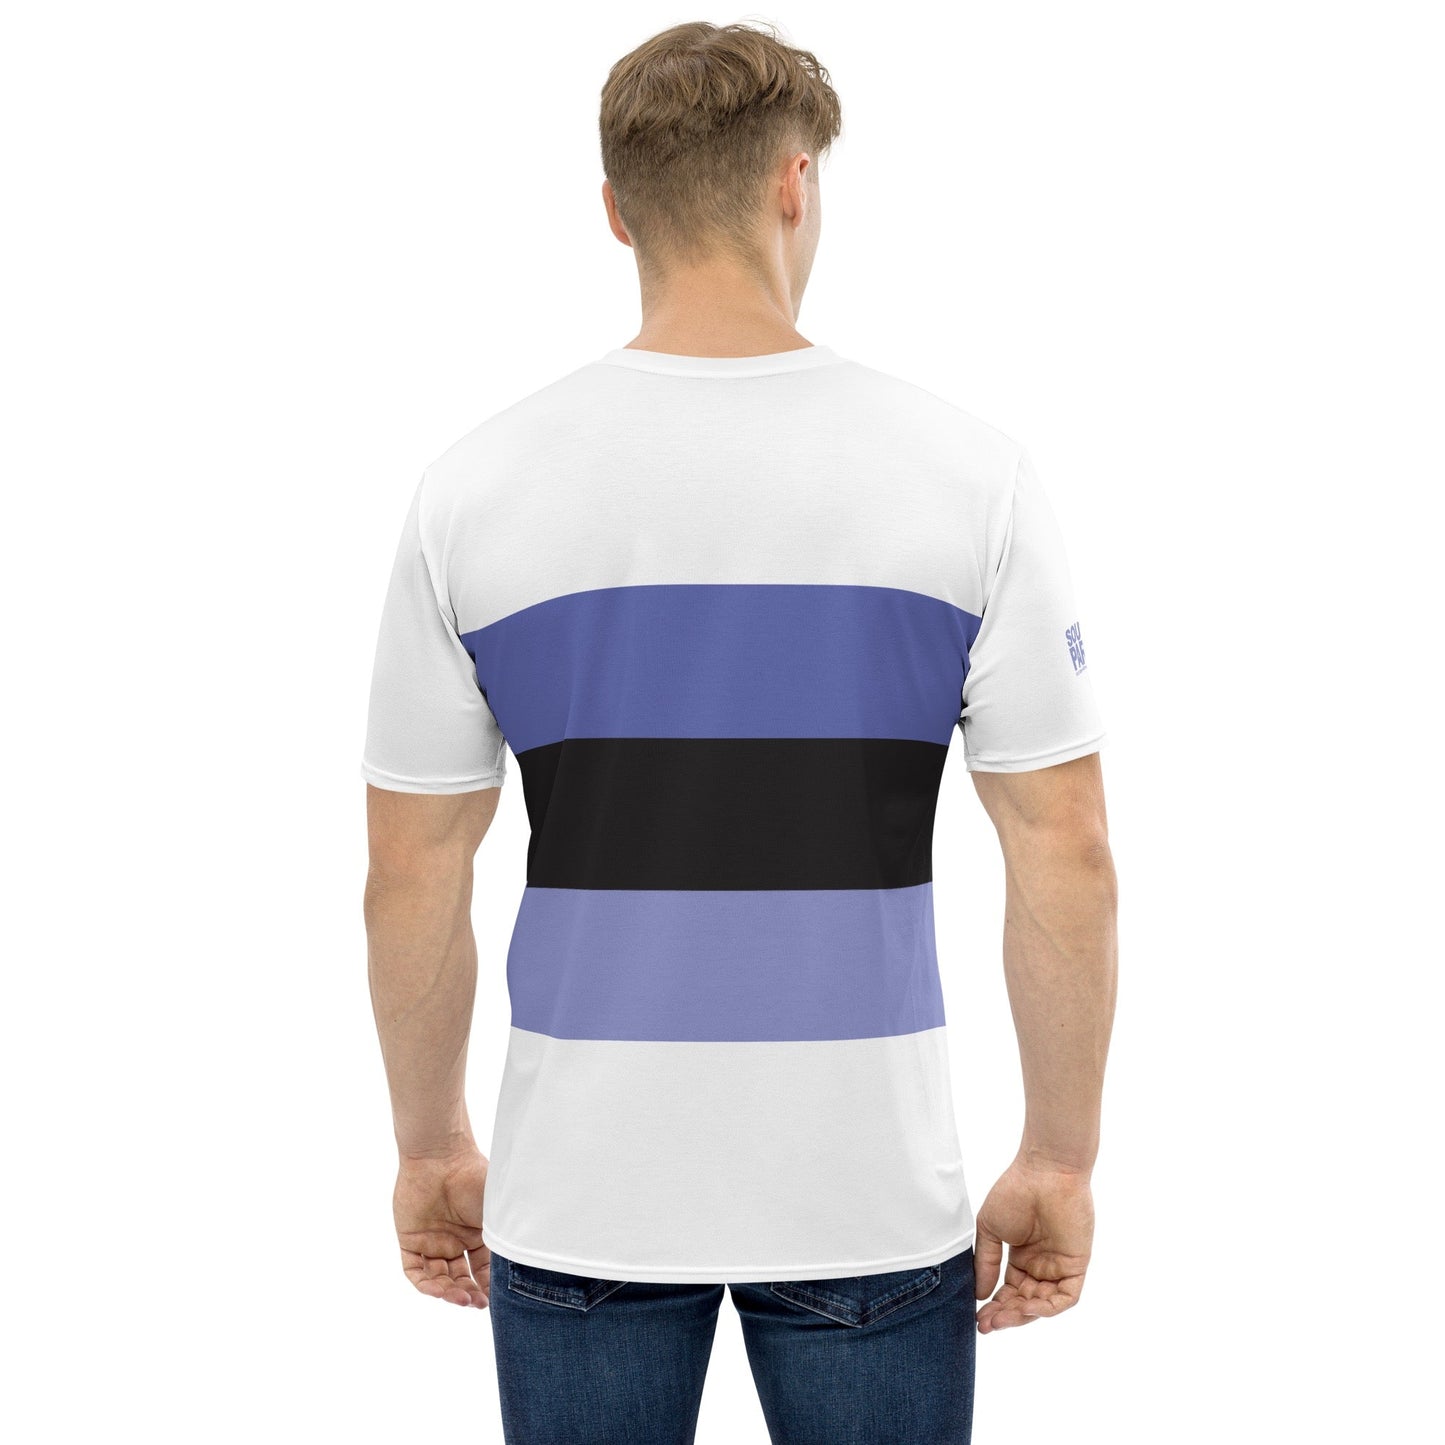 South Park Towelie Striped Unisex Short Sleeve T - Shirt - Paramount Shop